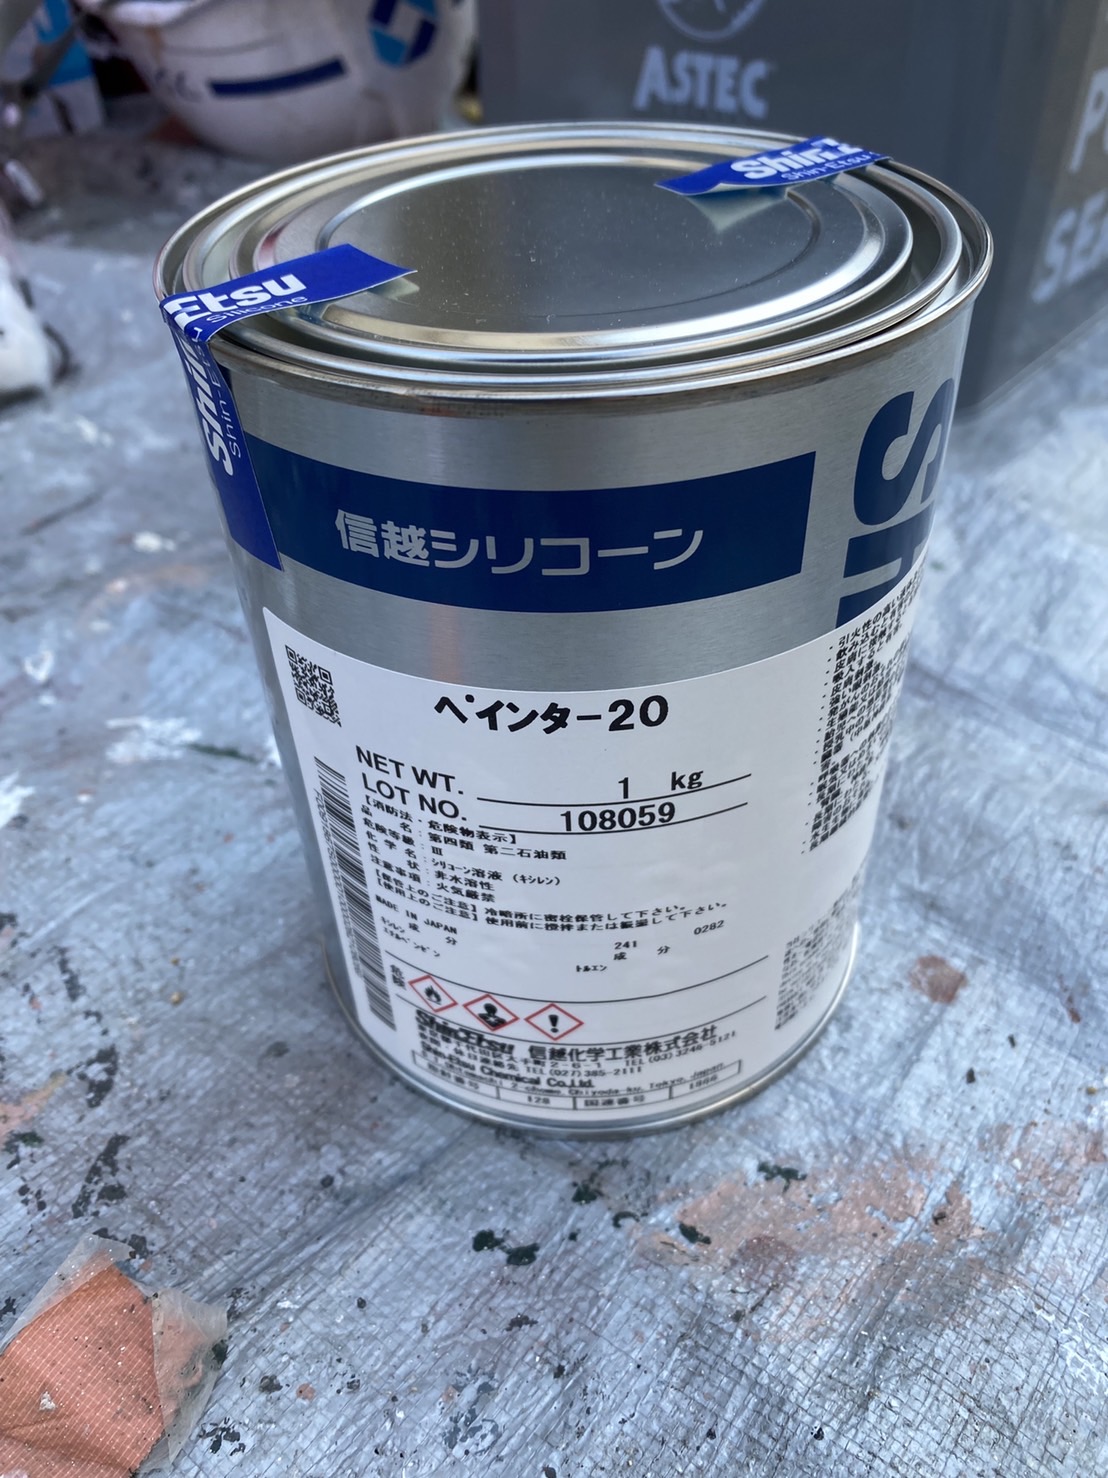 福岡県春日市 塗装用下地処理剤 ペインター20 写真16